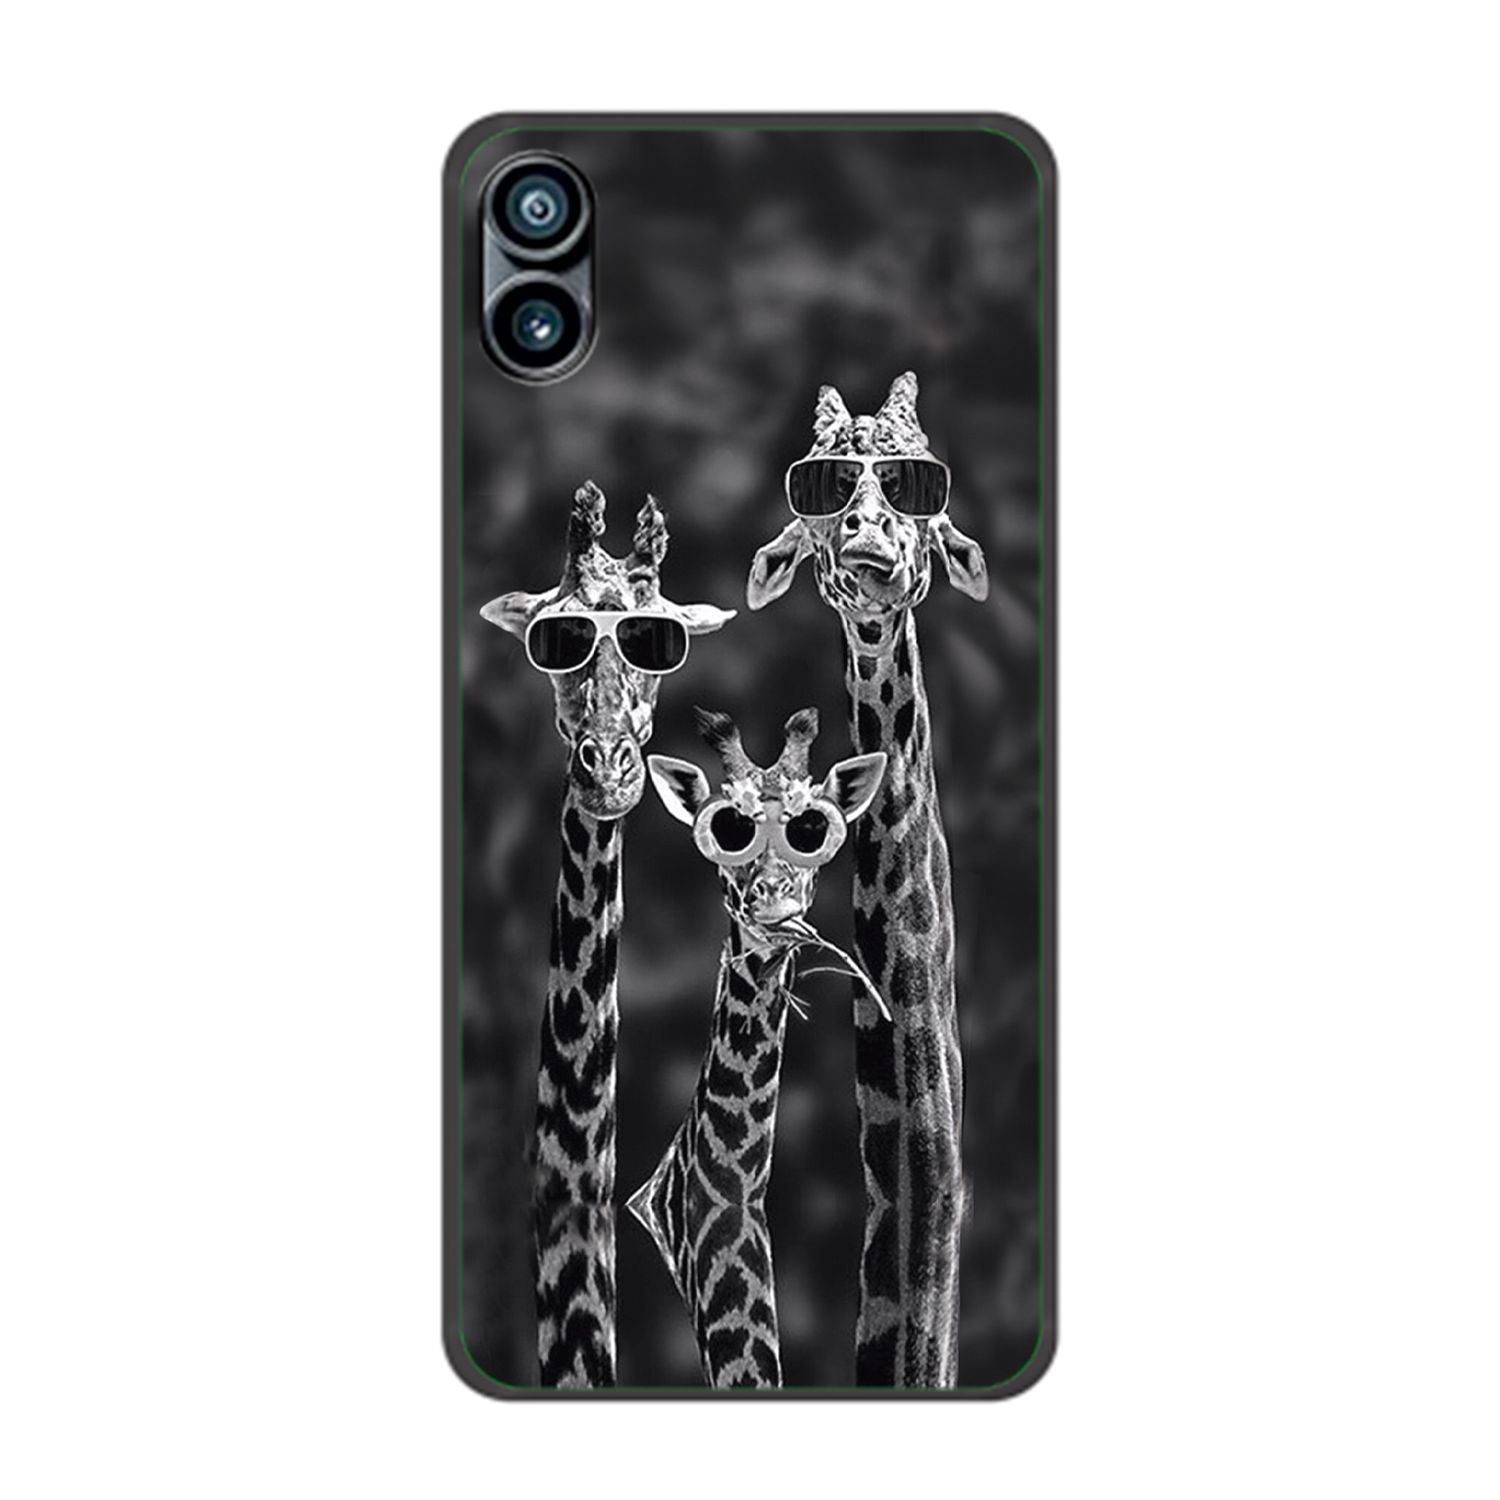 KÖNIG Nothing, Giraffen Case, DESIGN 3 Phone Backcover, 1,